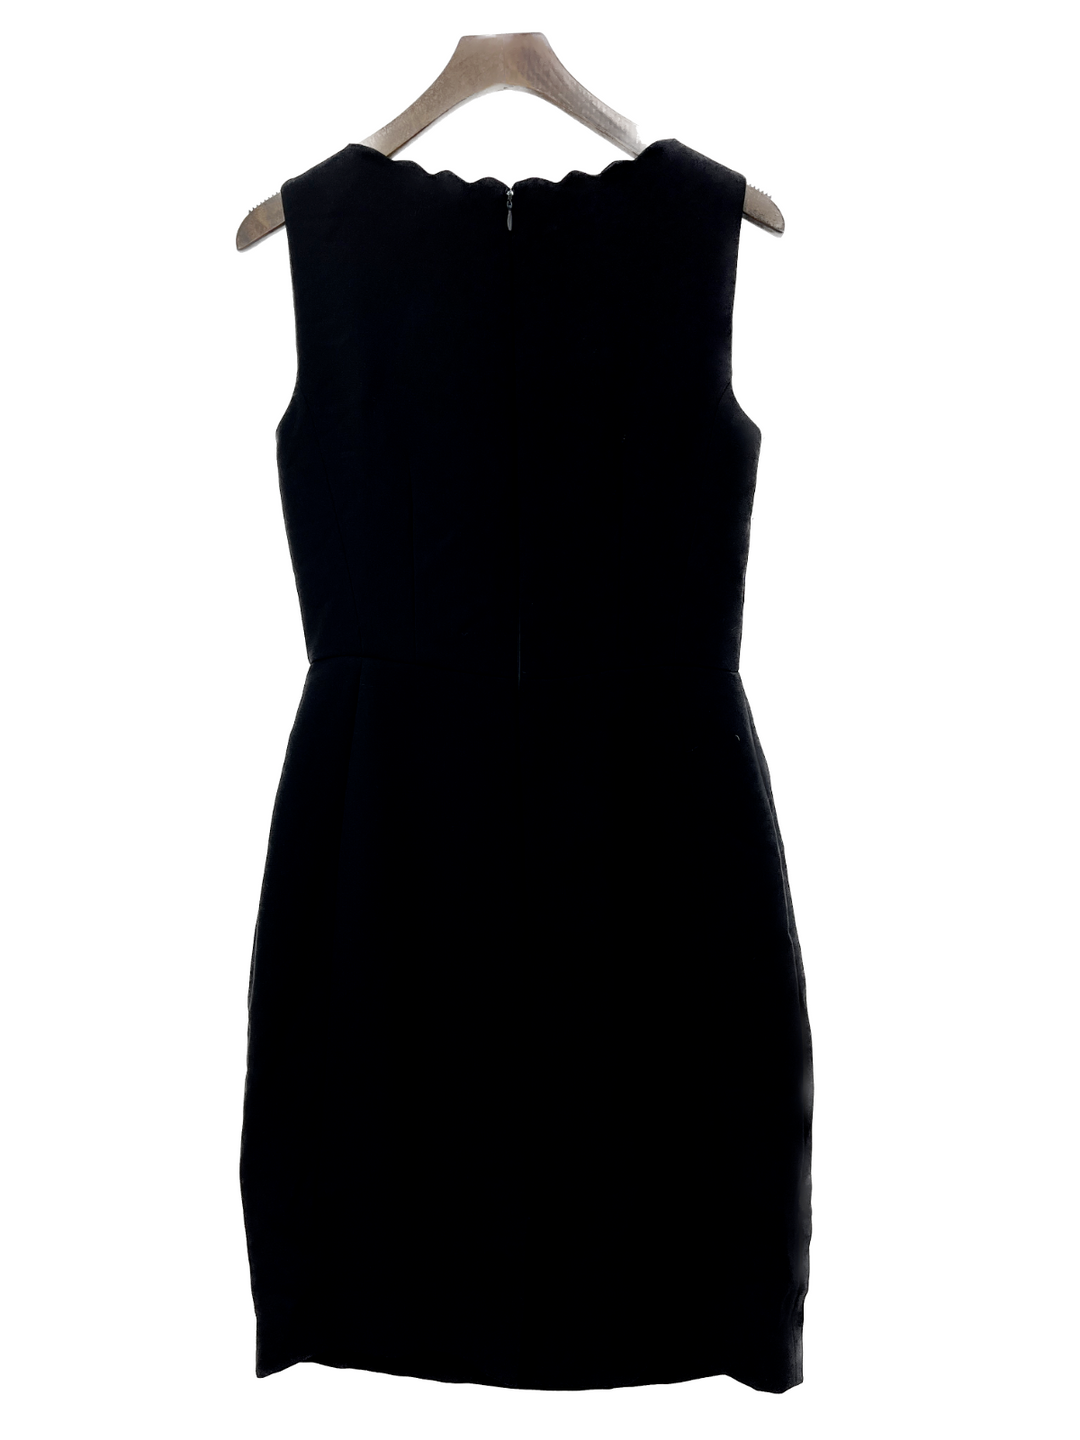 Tahari Black Fitted Pencil Skirt Dress Size 2